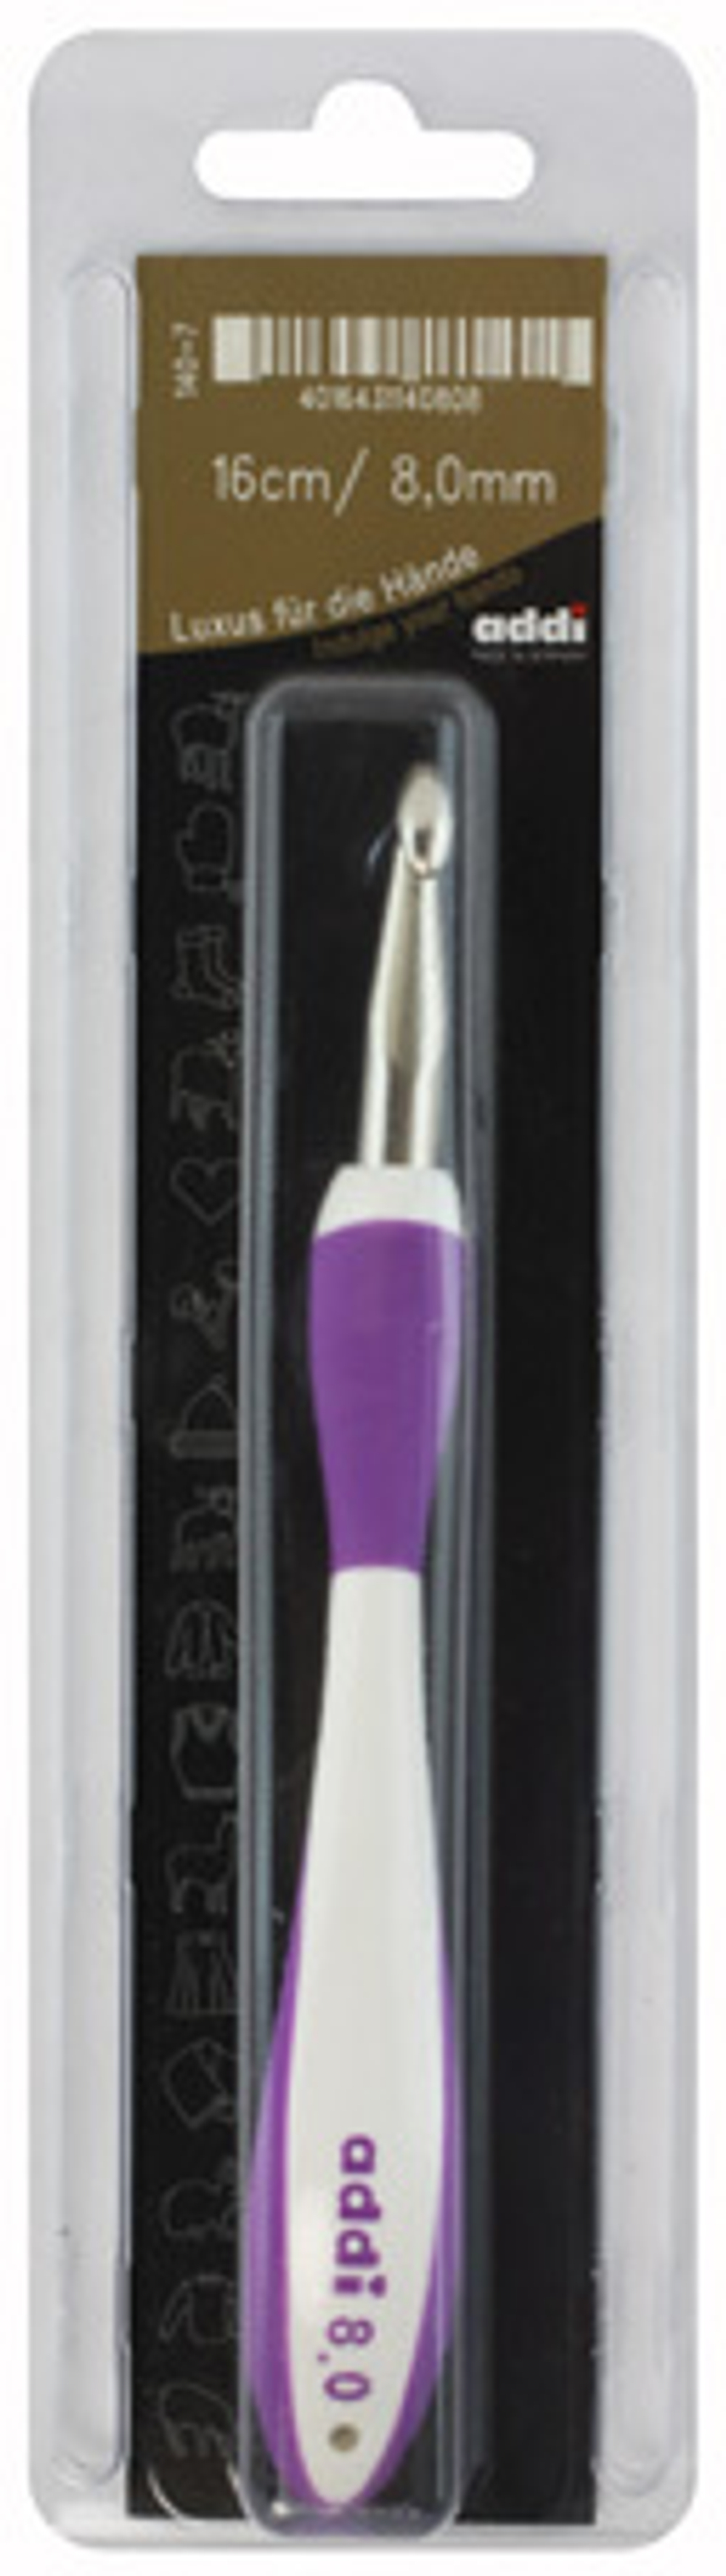 Крючок, вязальный с эргономичной пластиковой ручкой addiSwing № 8, 16 см